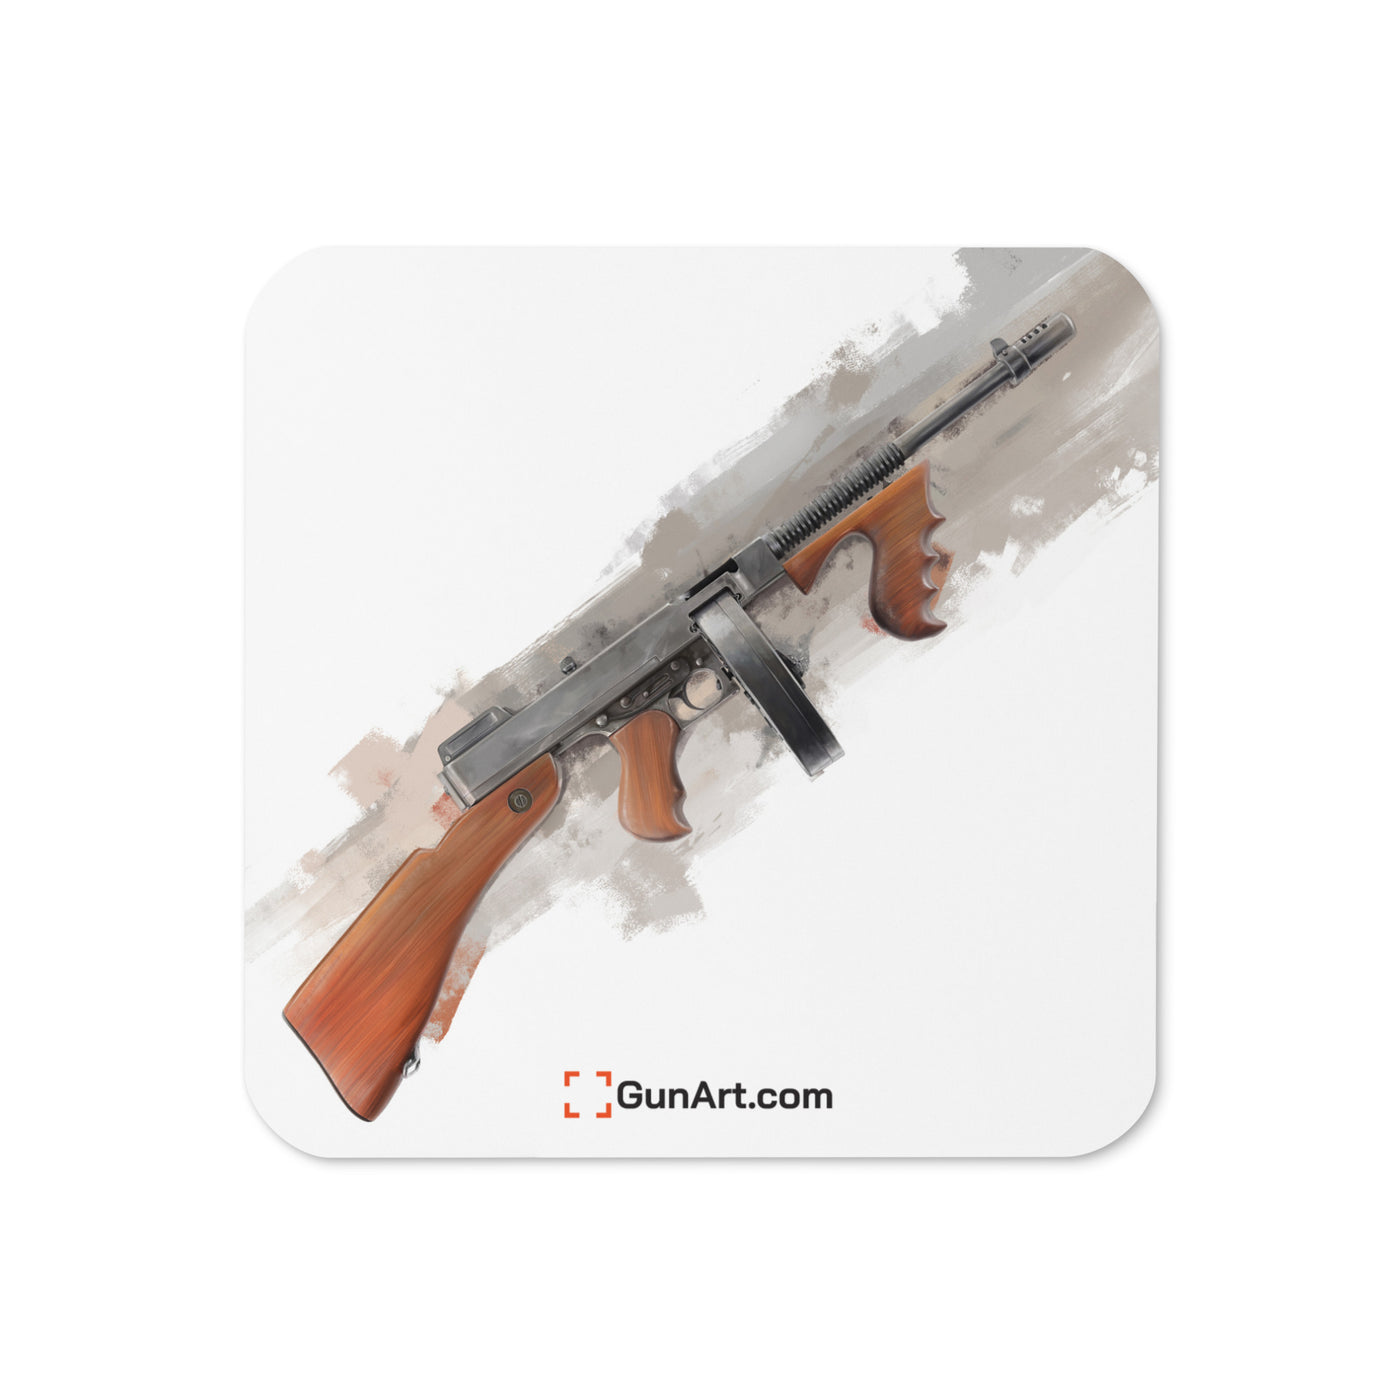 The “OG” Mobster Machine Gun Cork-back Coaster